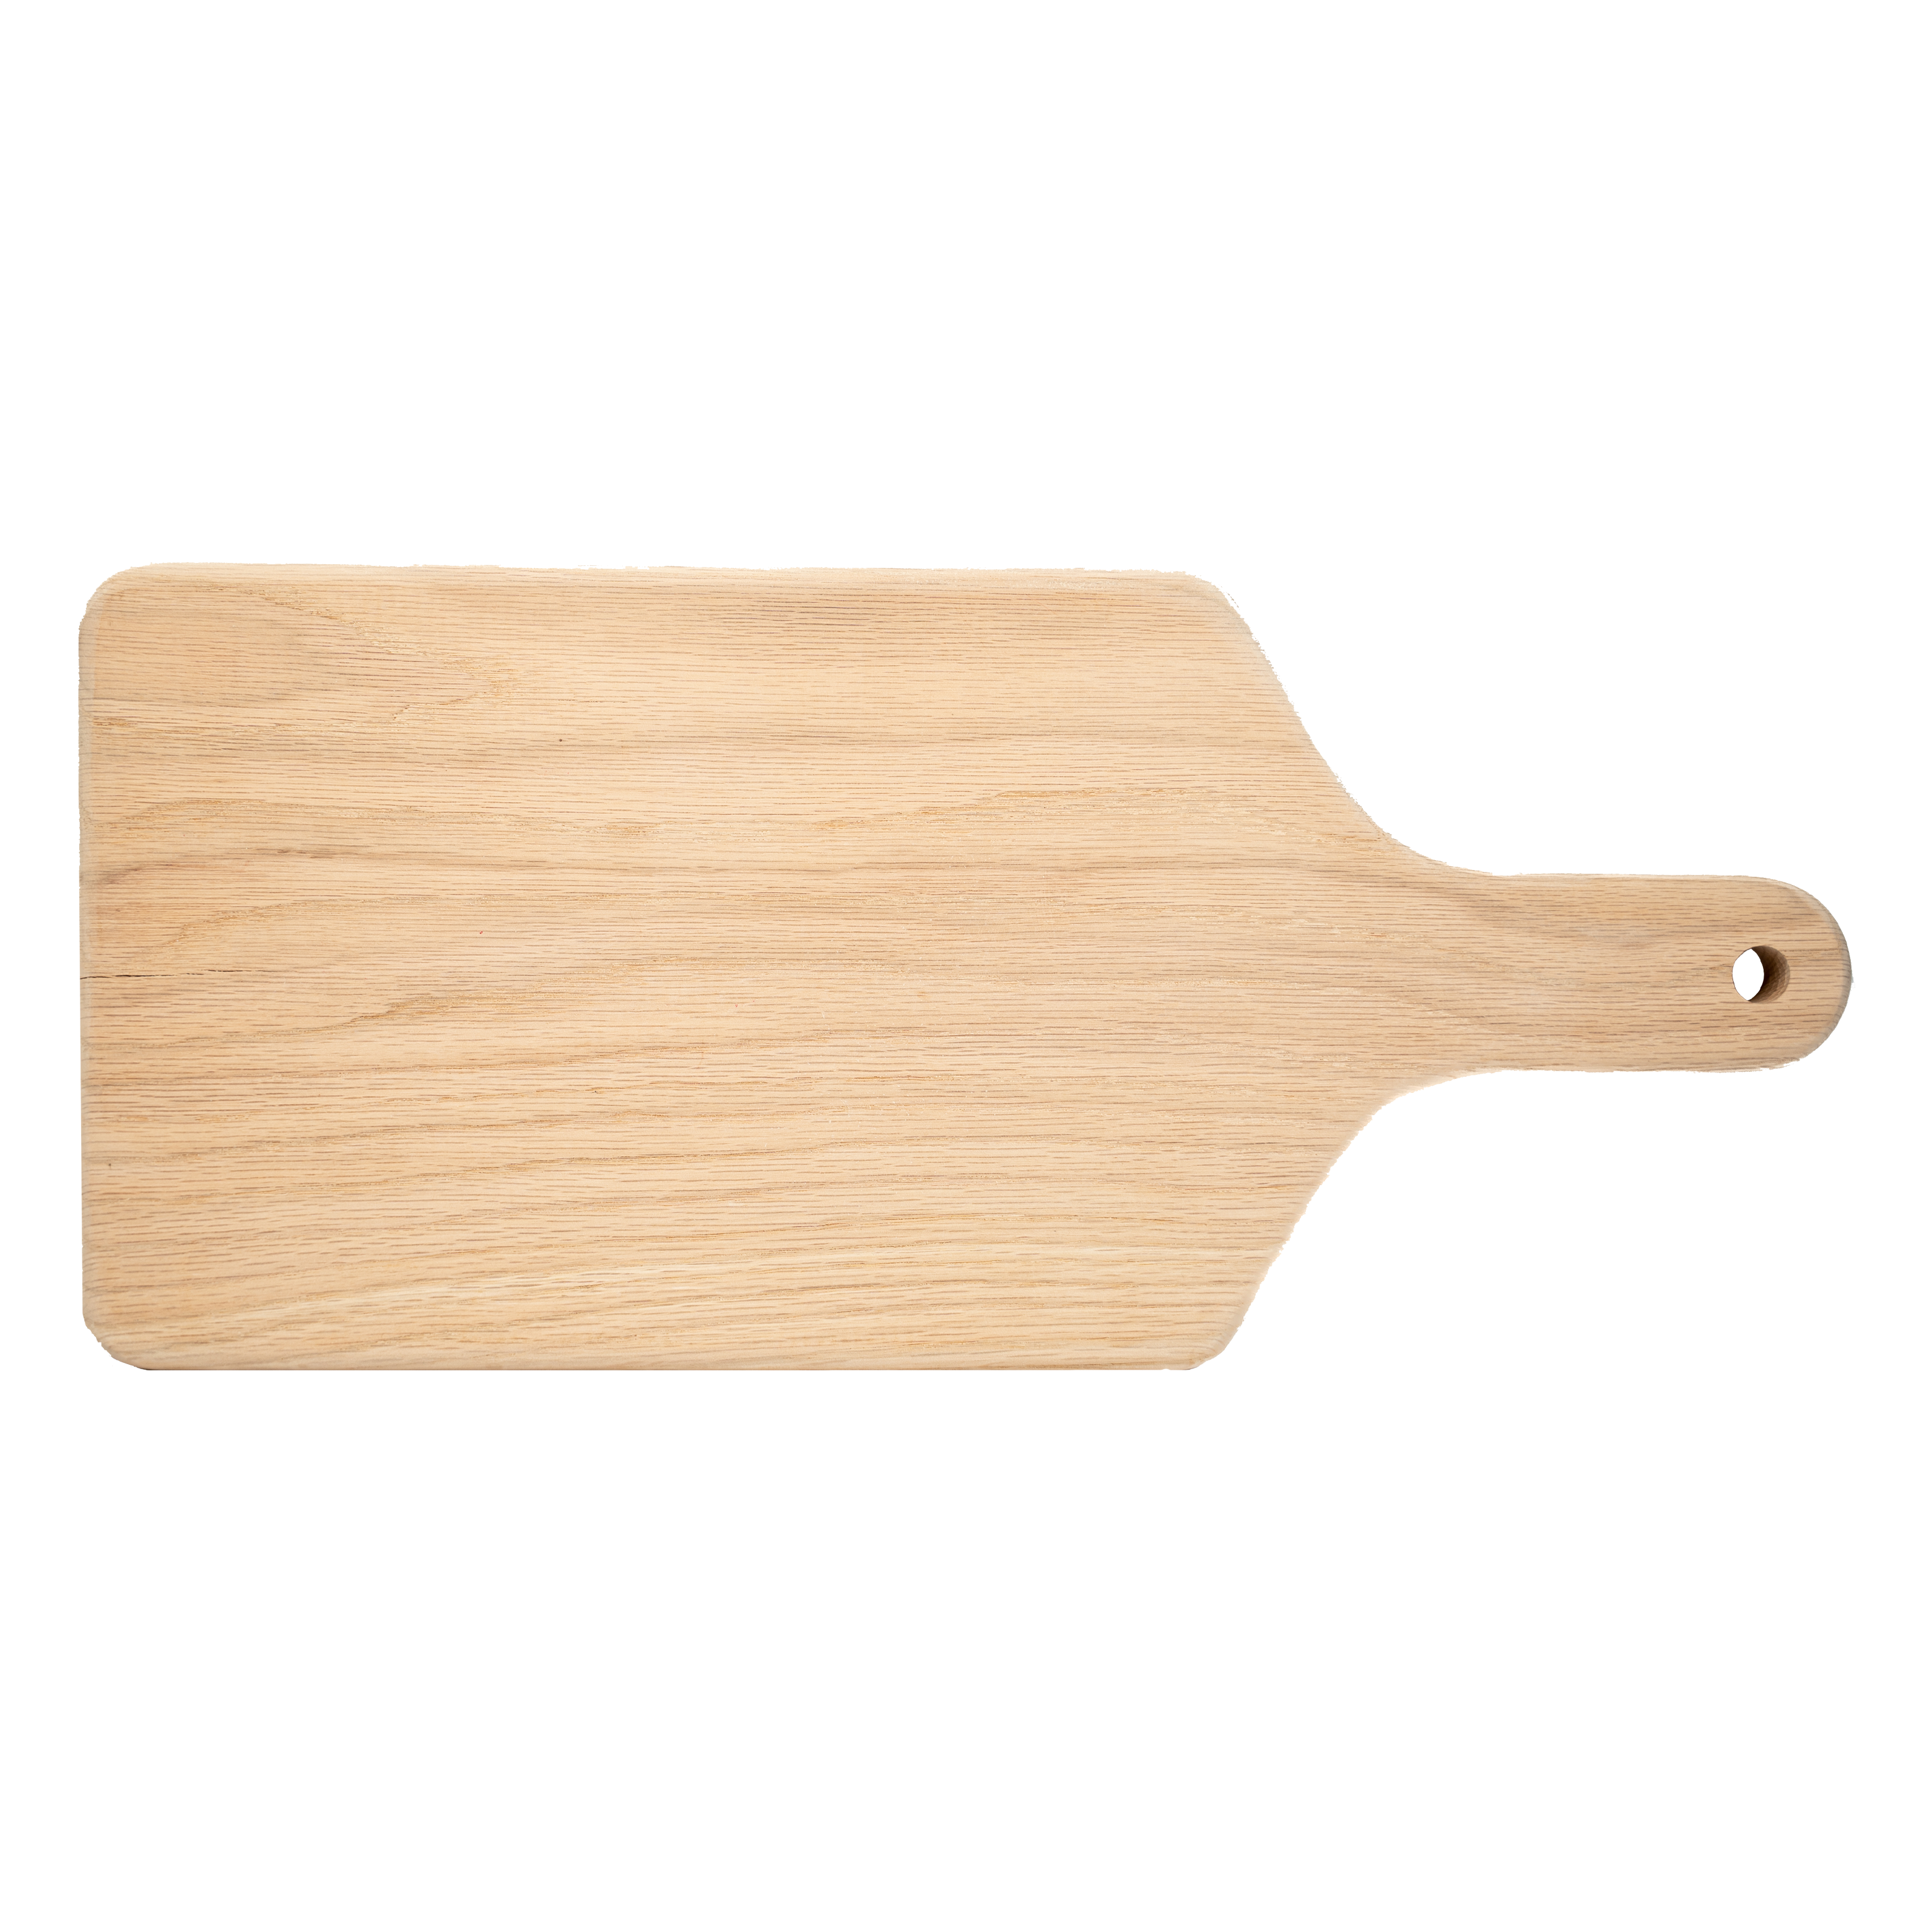 11x7 Paddle Cutting Board